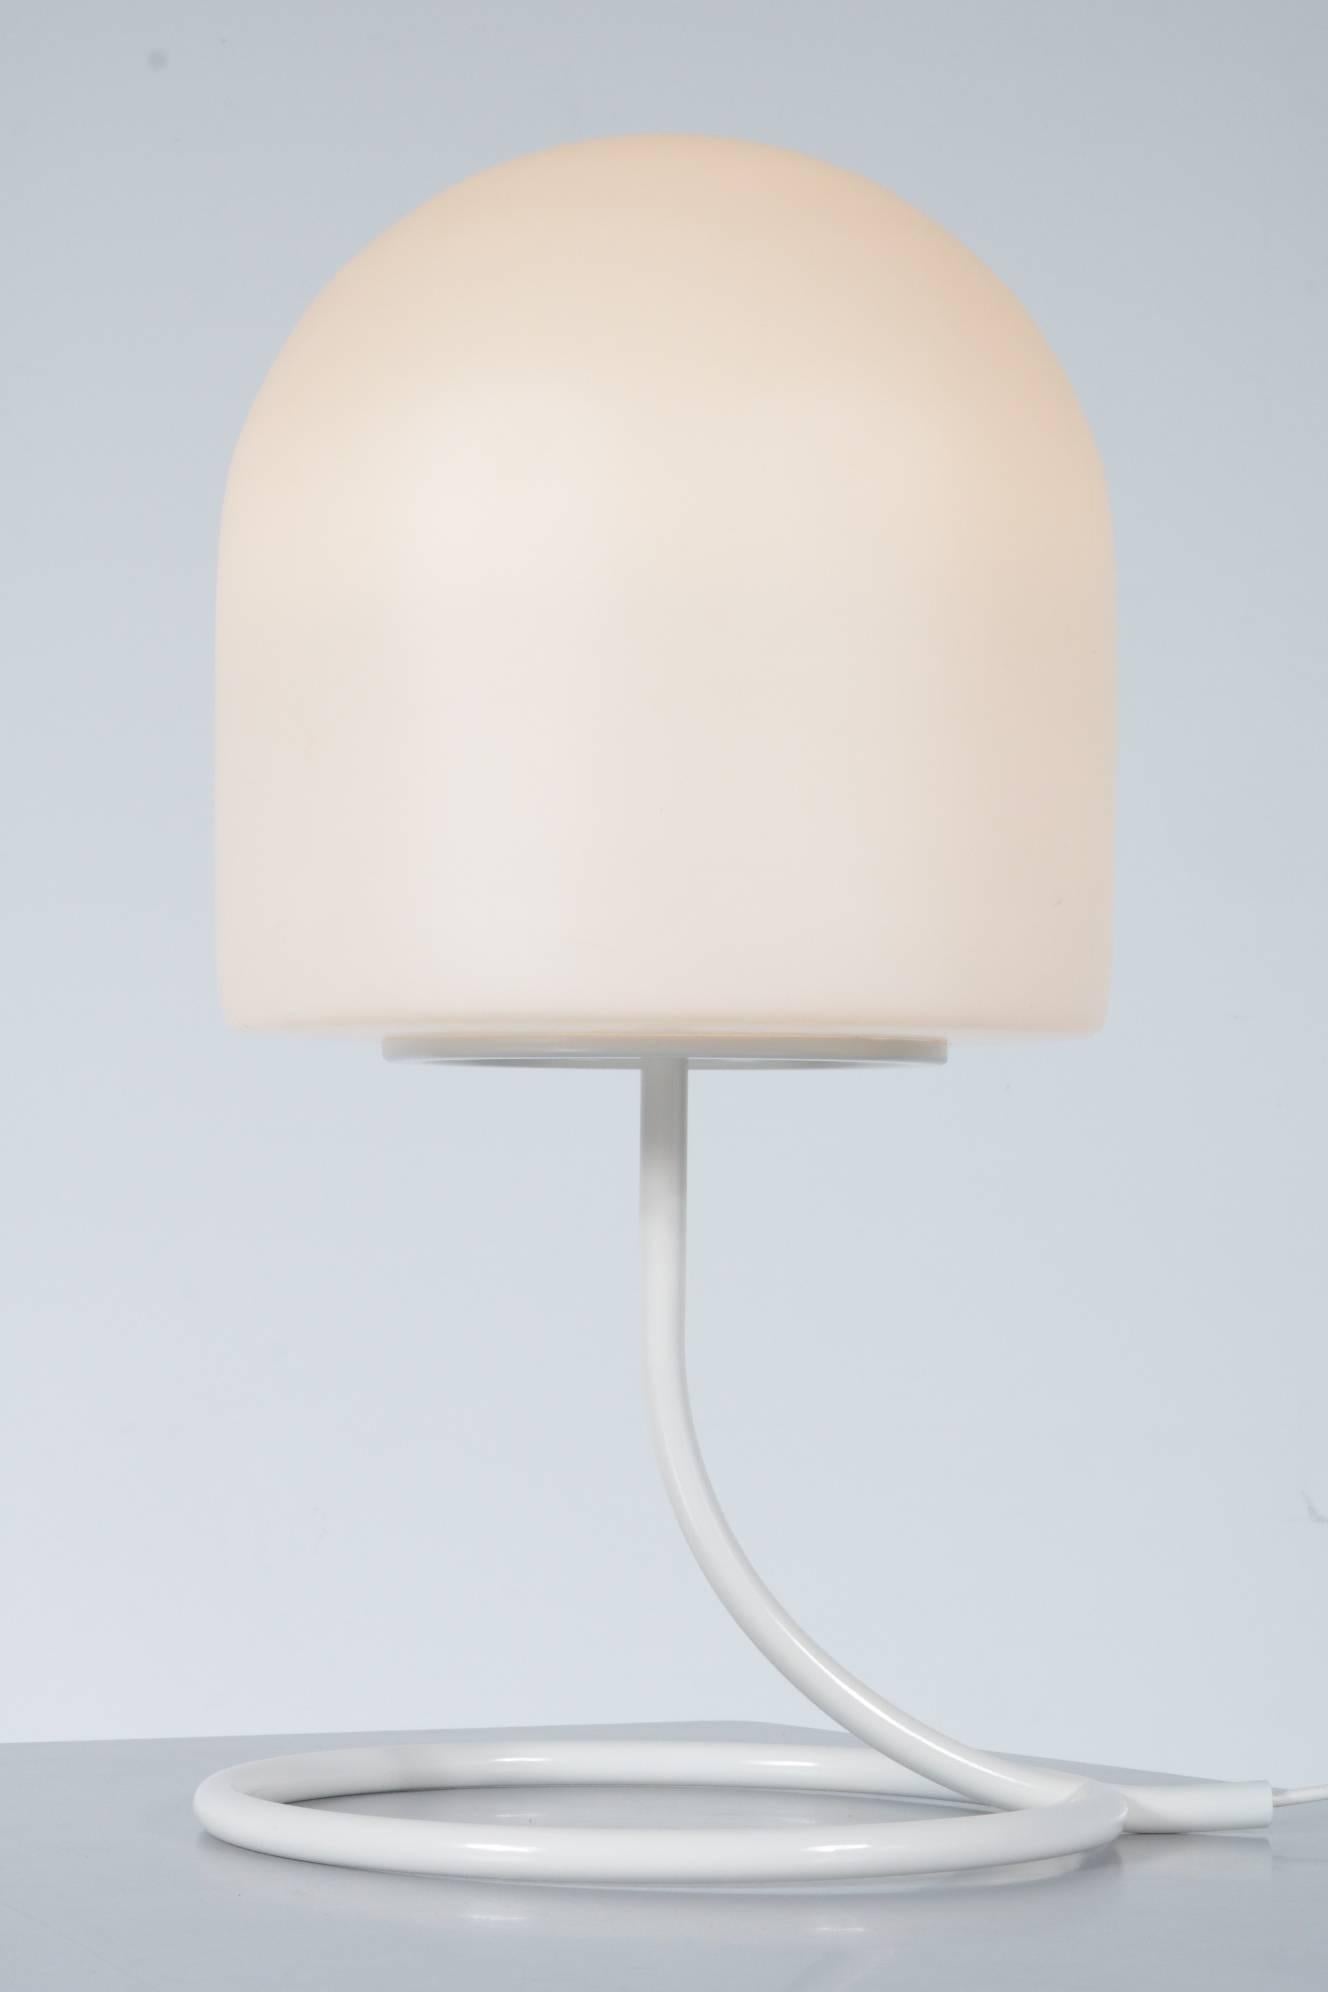 Mid-Century Modern Table Lamp A250 by Aldo van den Nieuwelaar for Artimeta, Netherlands, 1972